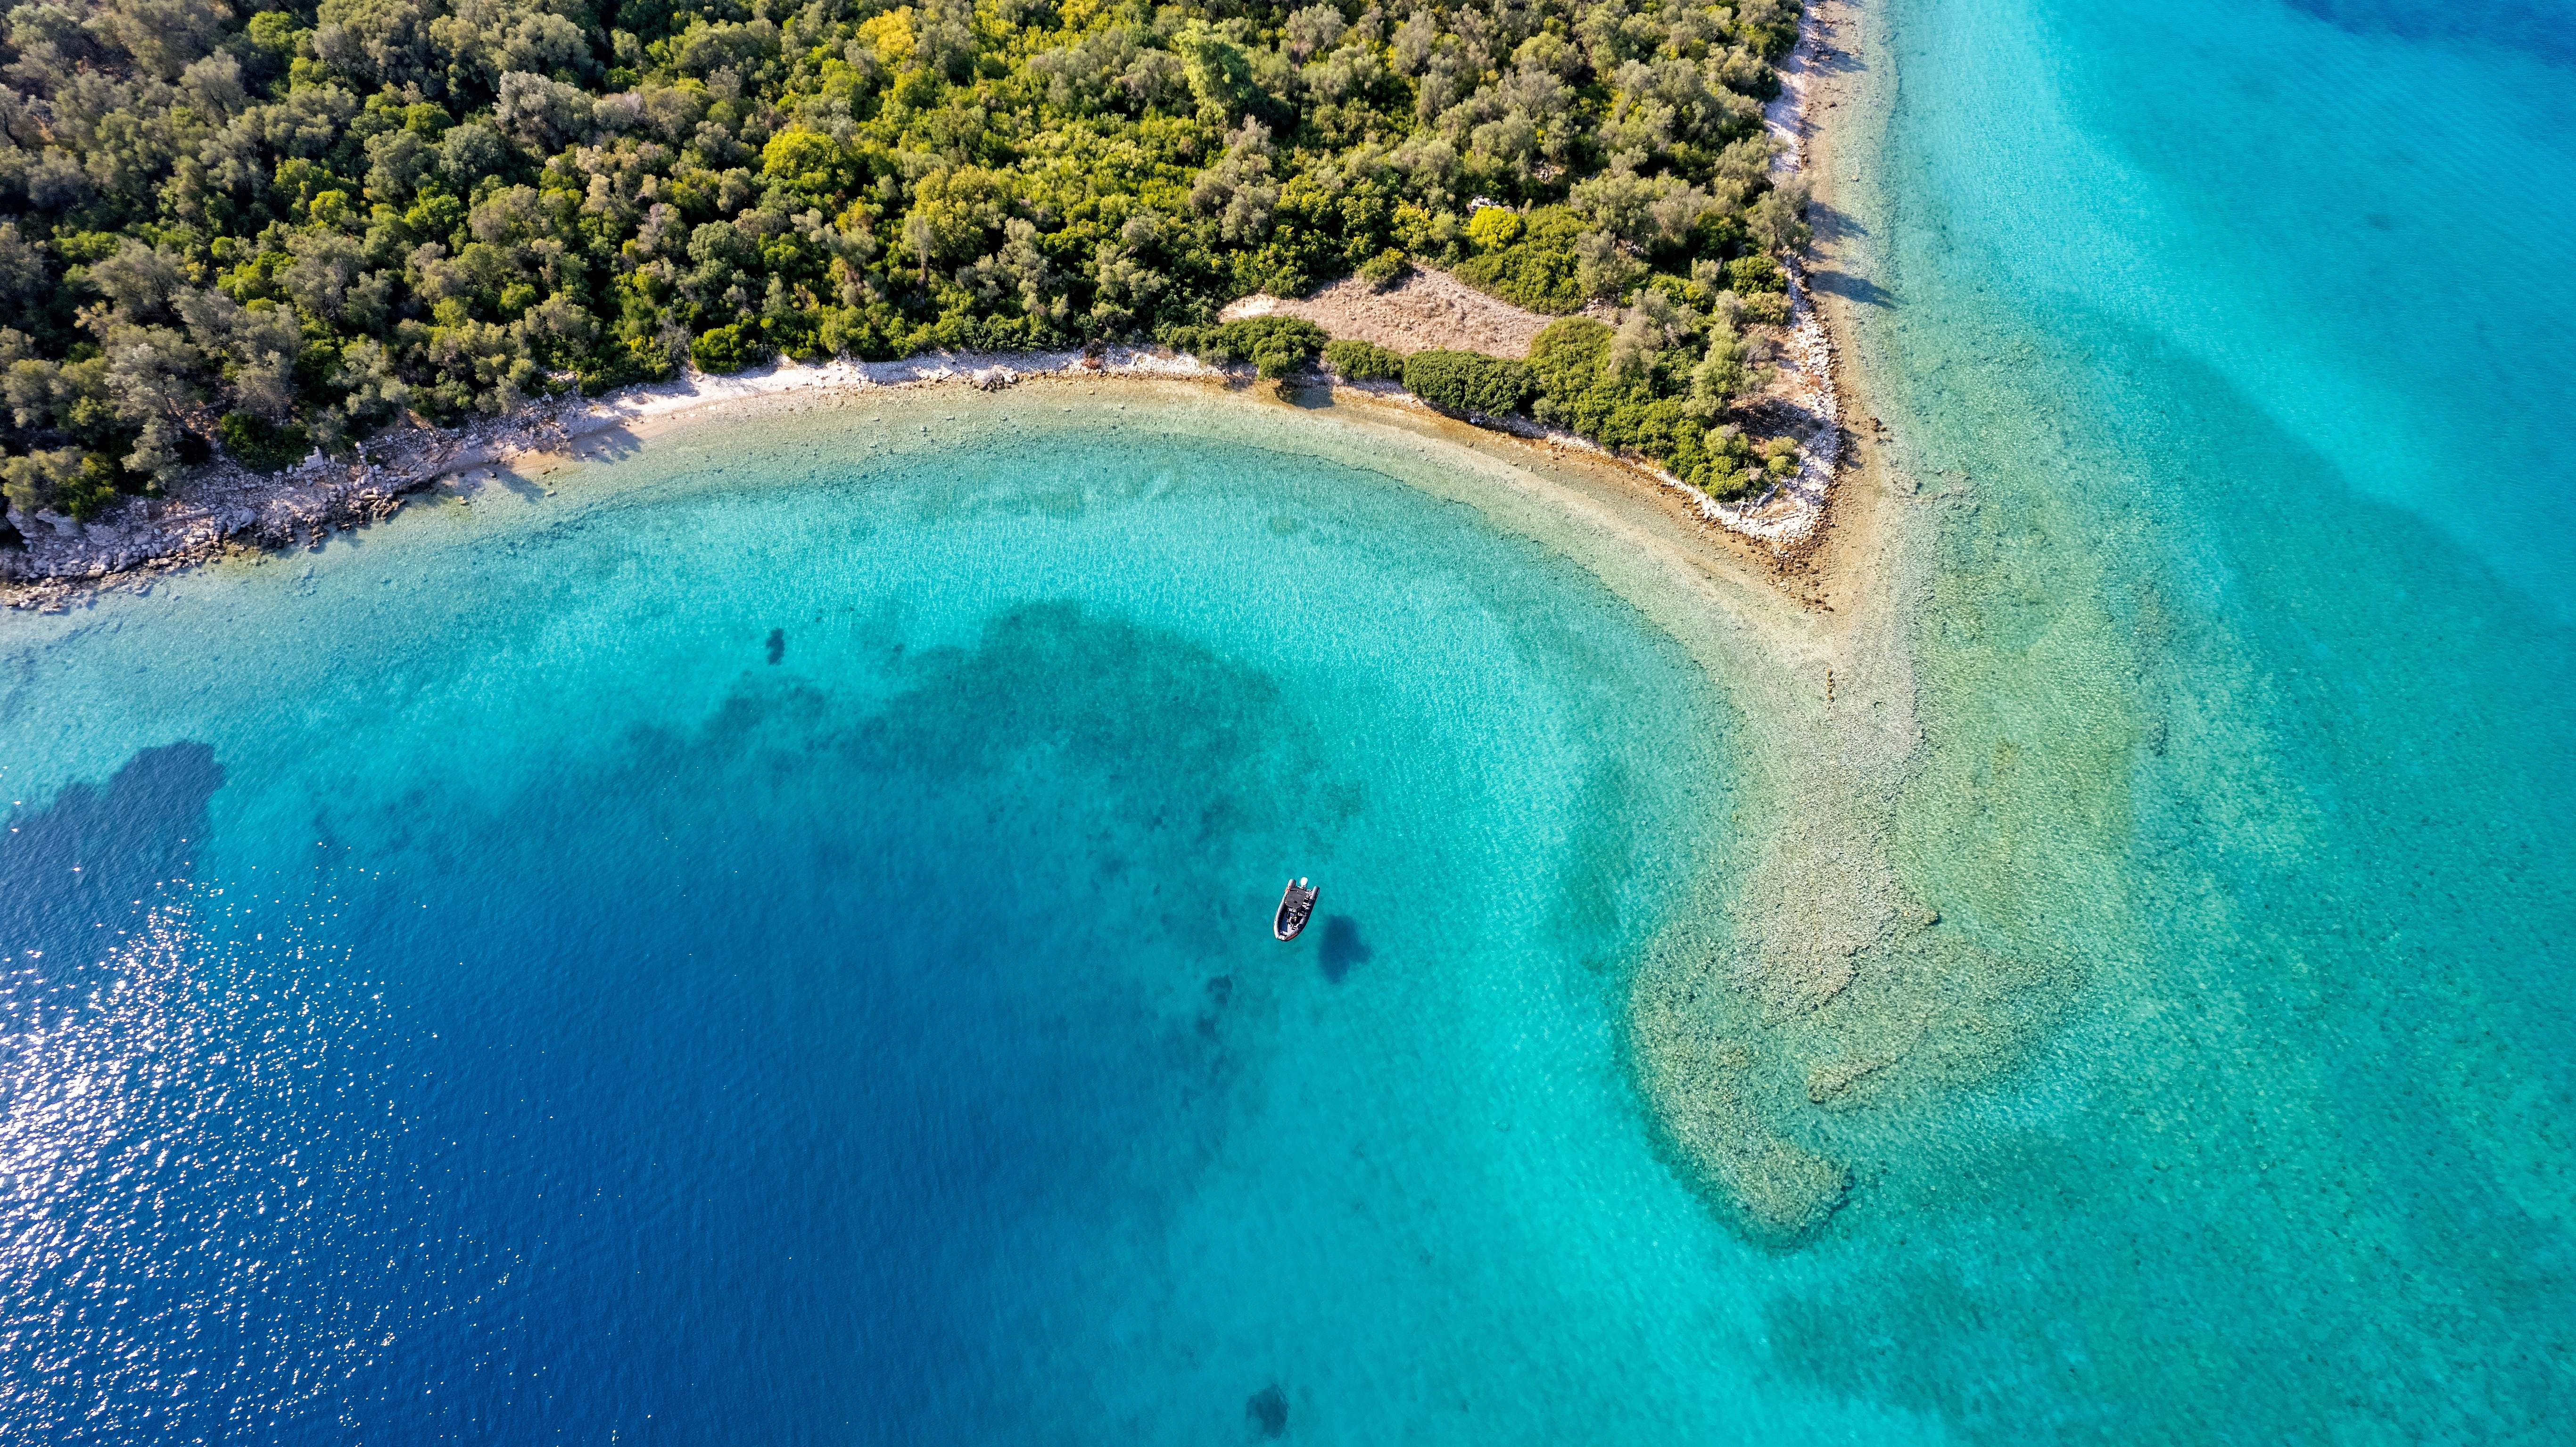 Turkijos lankytinos vietos - Kleopatros sala